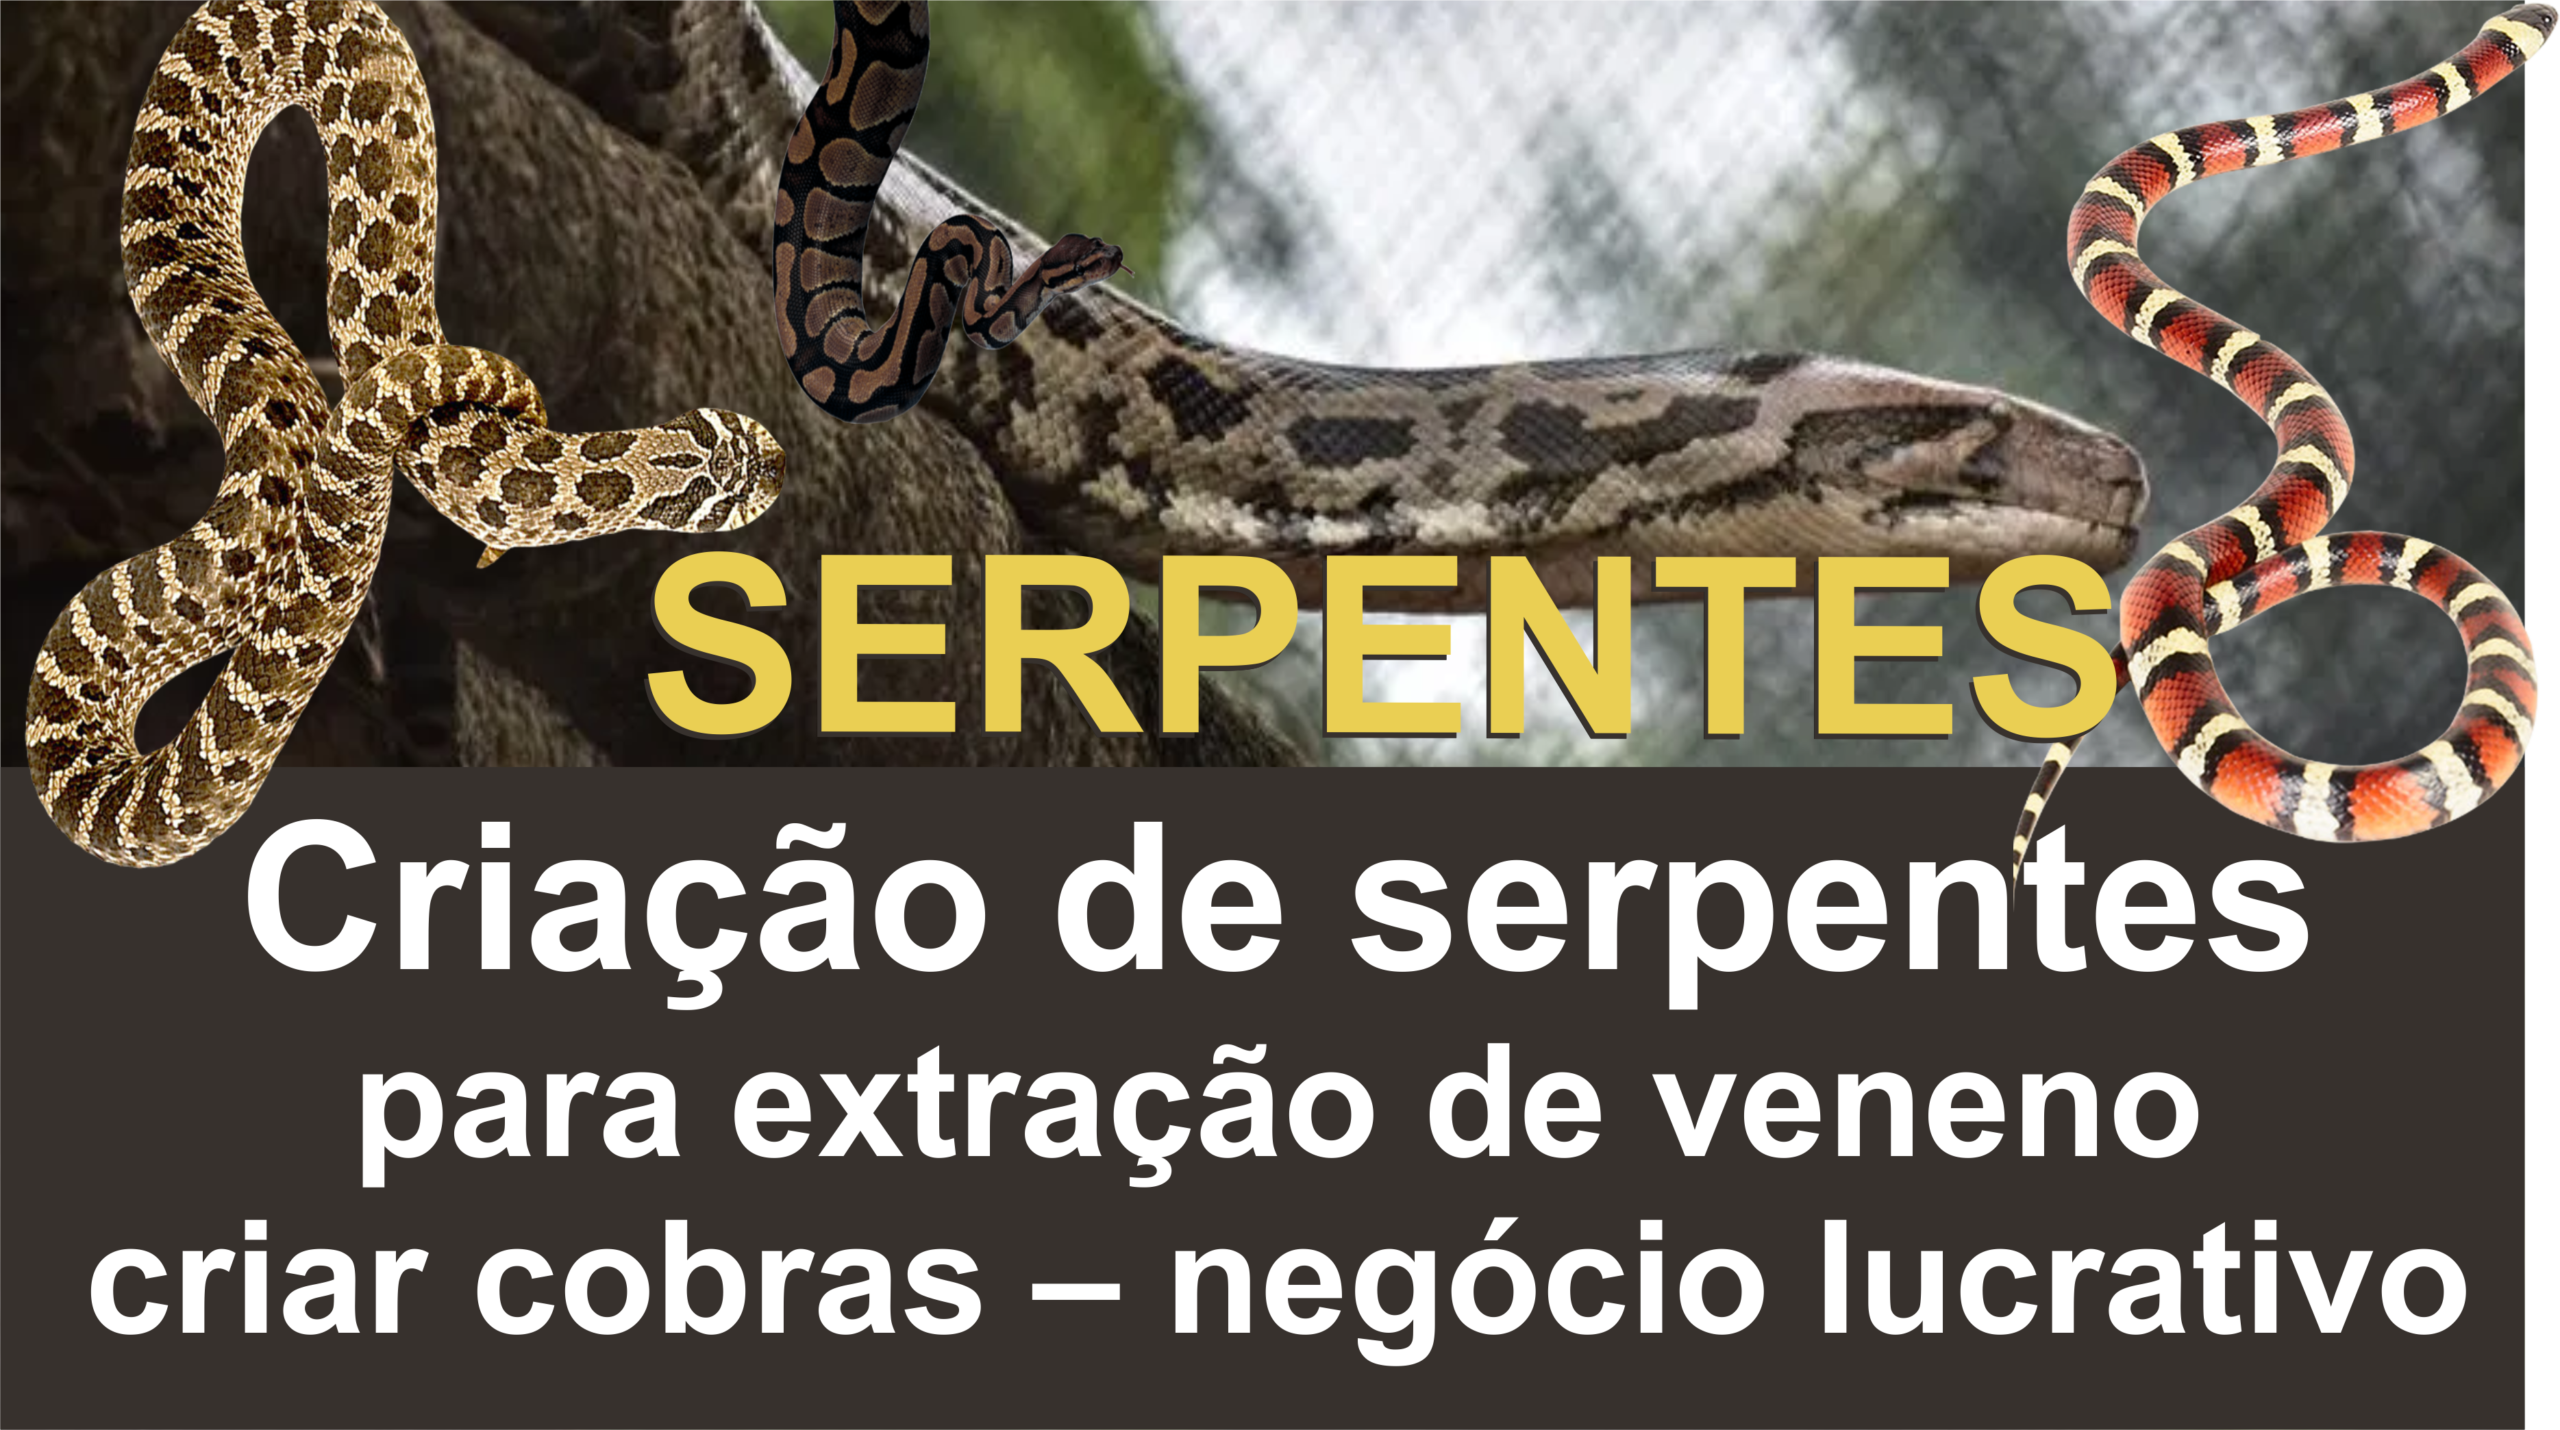 Serpentário: instalações e viabilidade de comercialização de serpentes